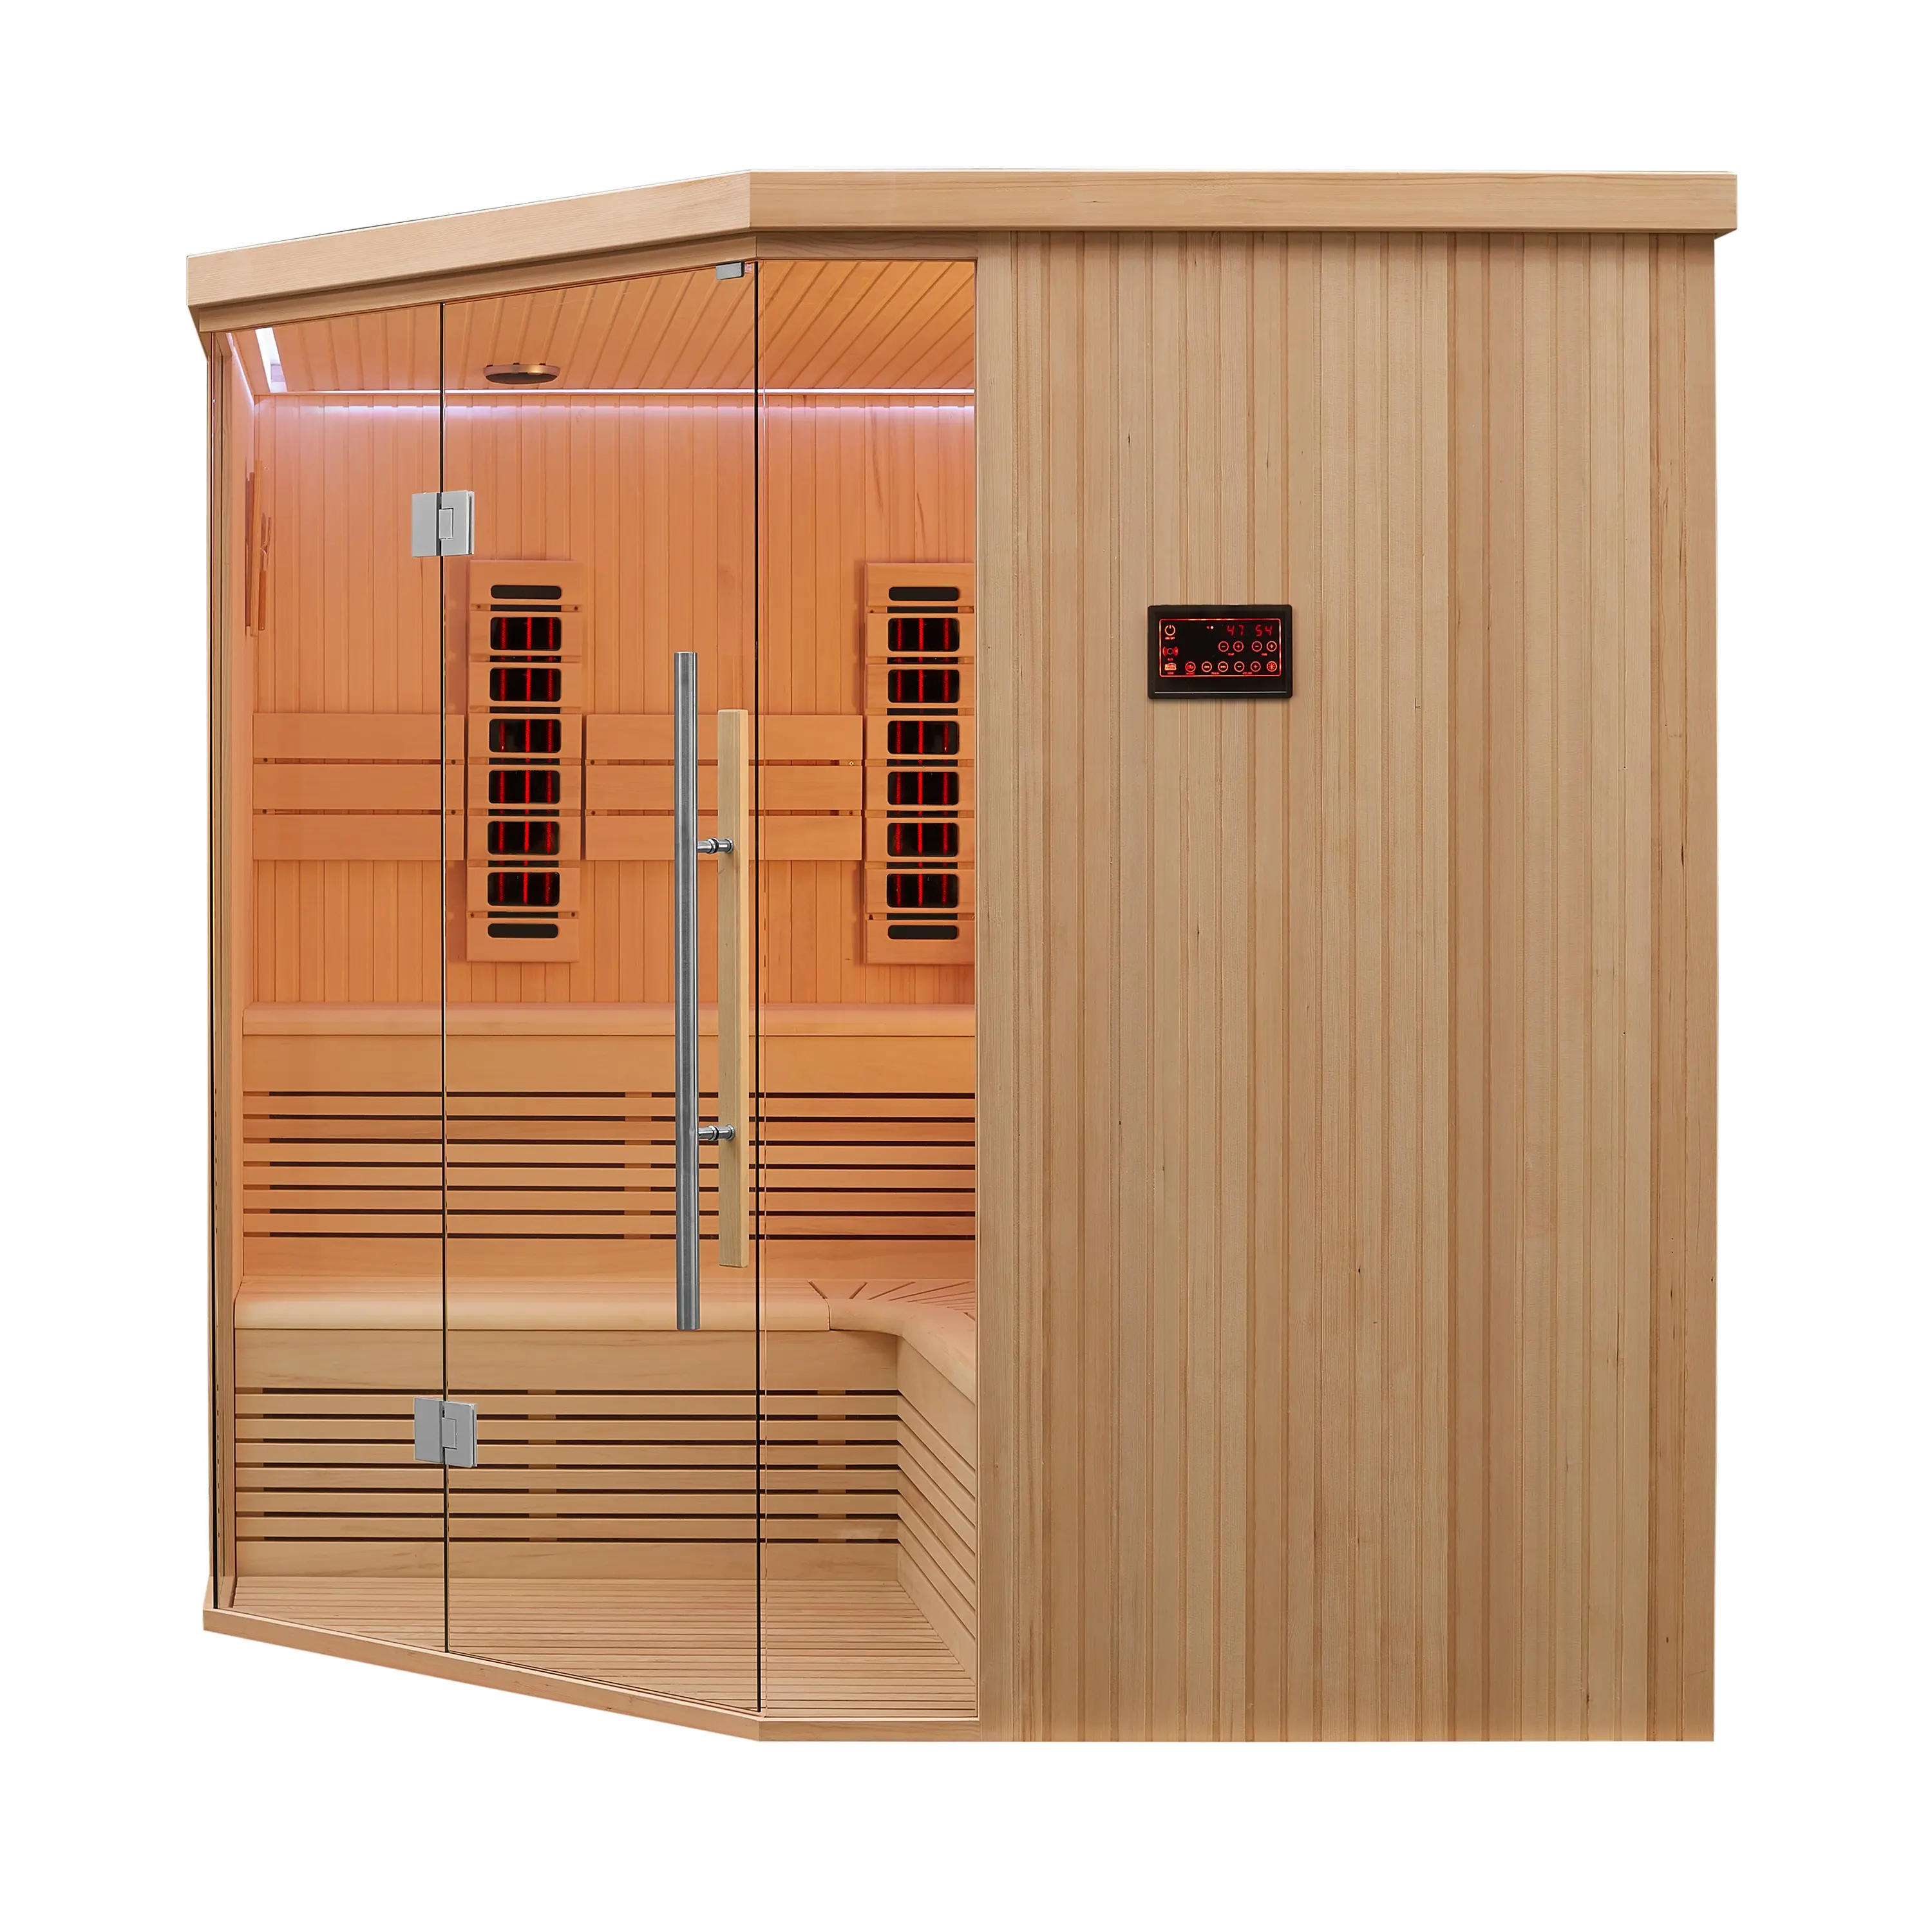 MEXDA in legno massello Hemlock Sauna tradizionale a infrarossi lontani per interni 3 persone Sauna a vapore secco WS-1813